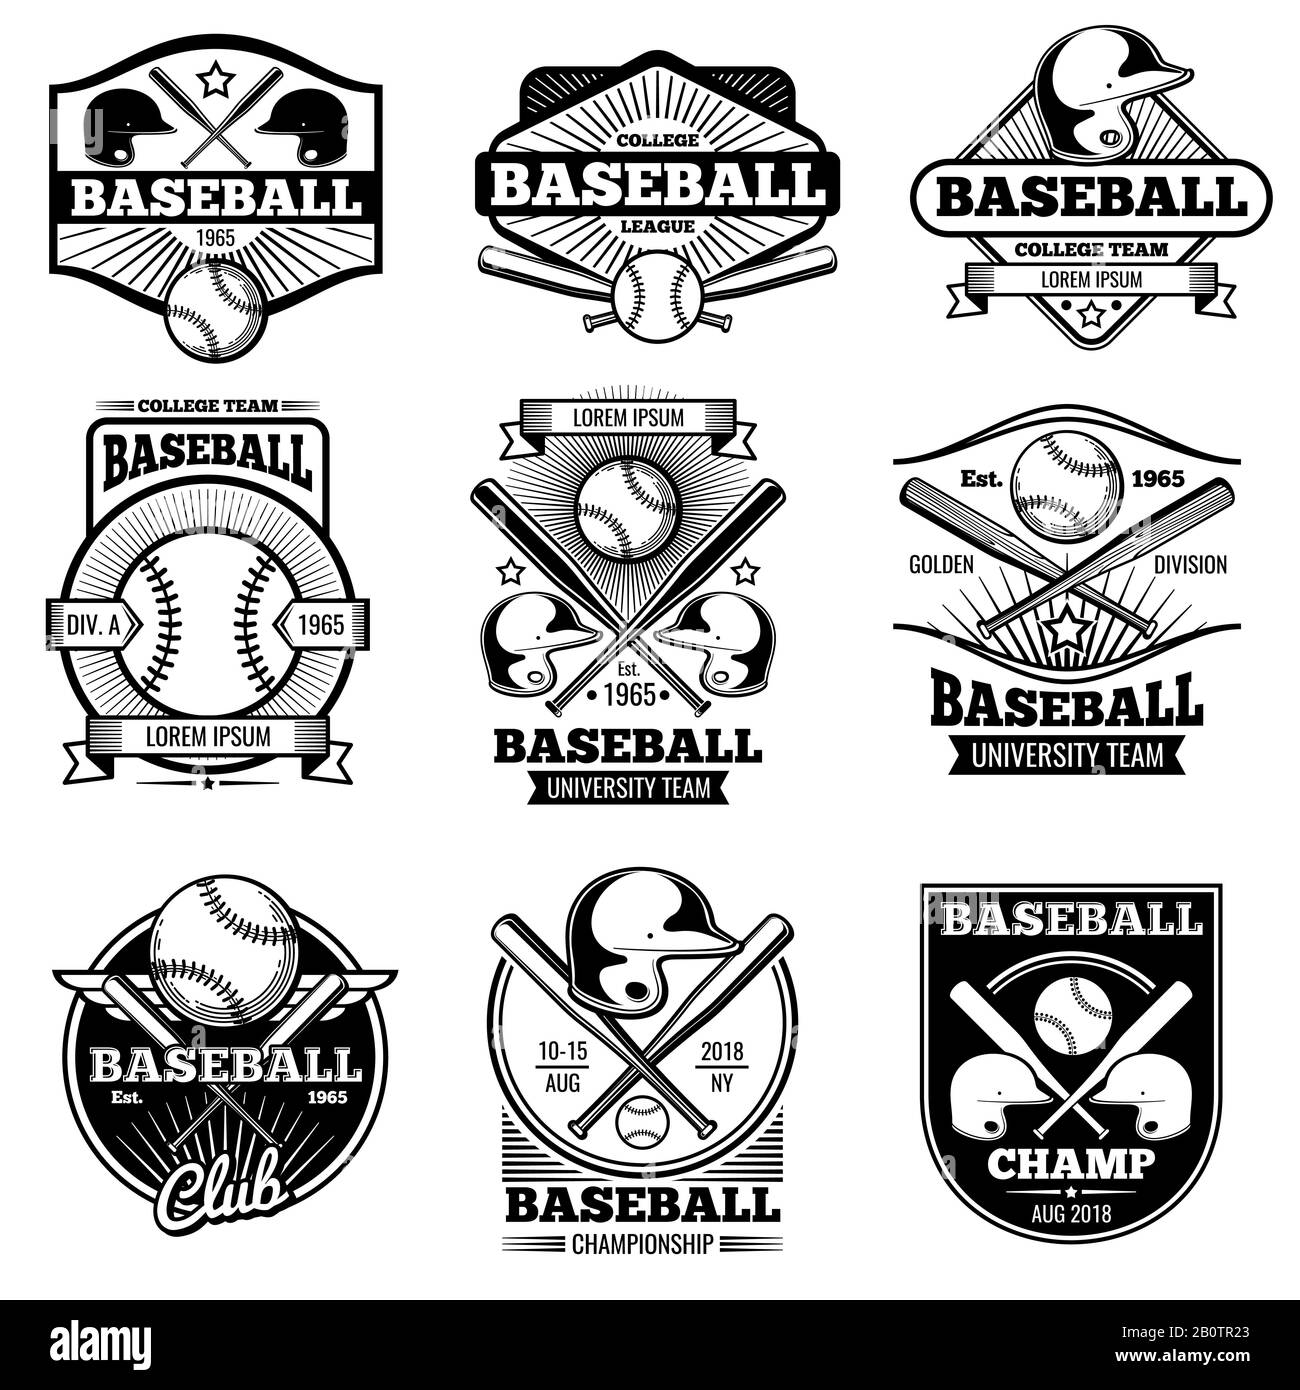 Logo sportif vintage. Étiquette et badges vectoriels de baseball rétro. Emblème illustration du baseball, logo du jeu avec ballon et batte Illustration de Vecteur